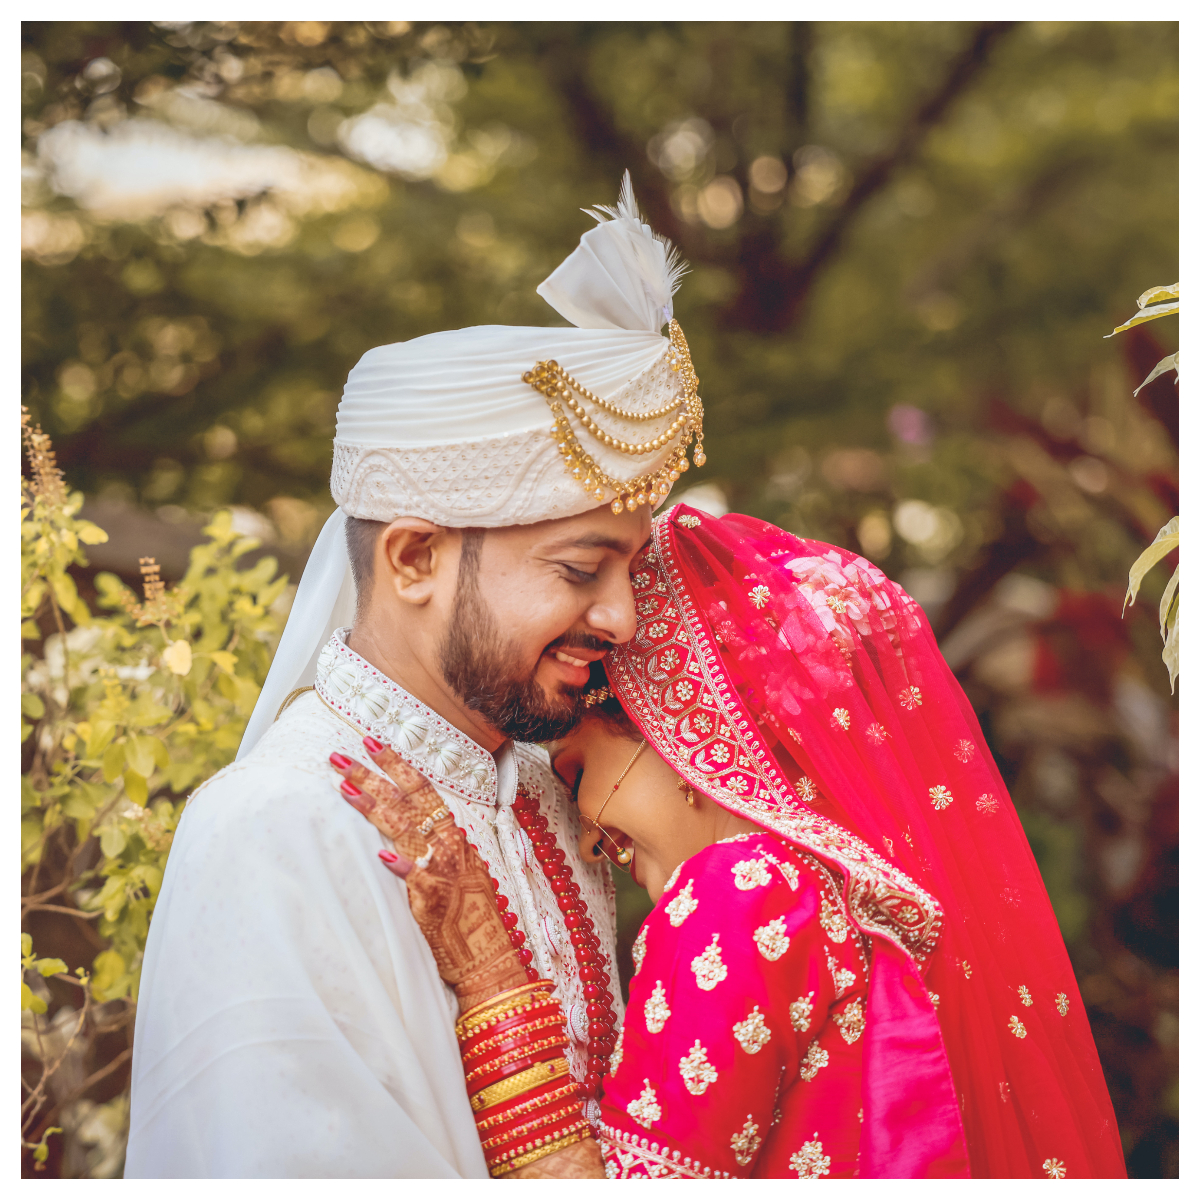 Divya Weds Naveen Wedding Stories Photography Images  Latest Wedding  Stories Poses  The Wedding Focus